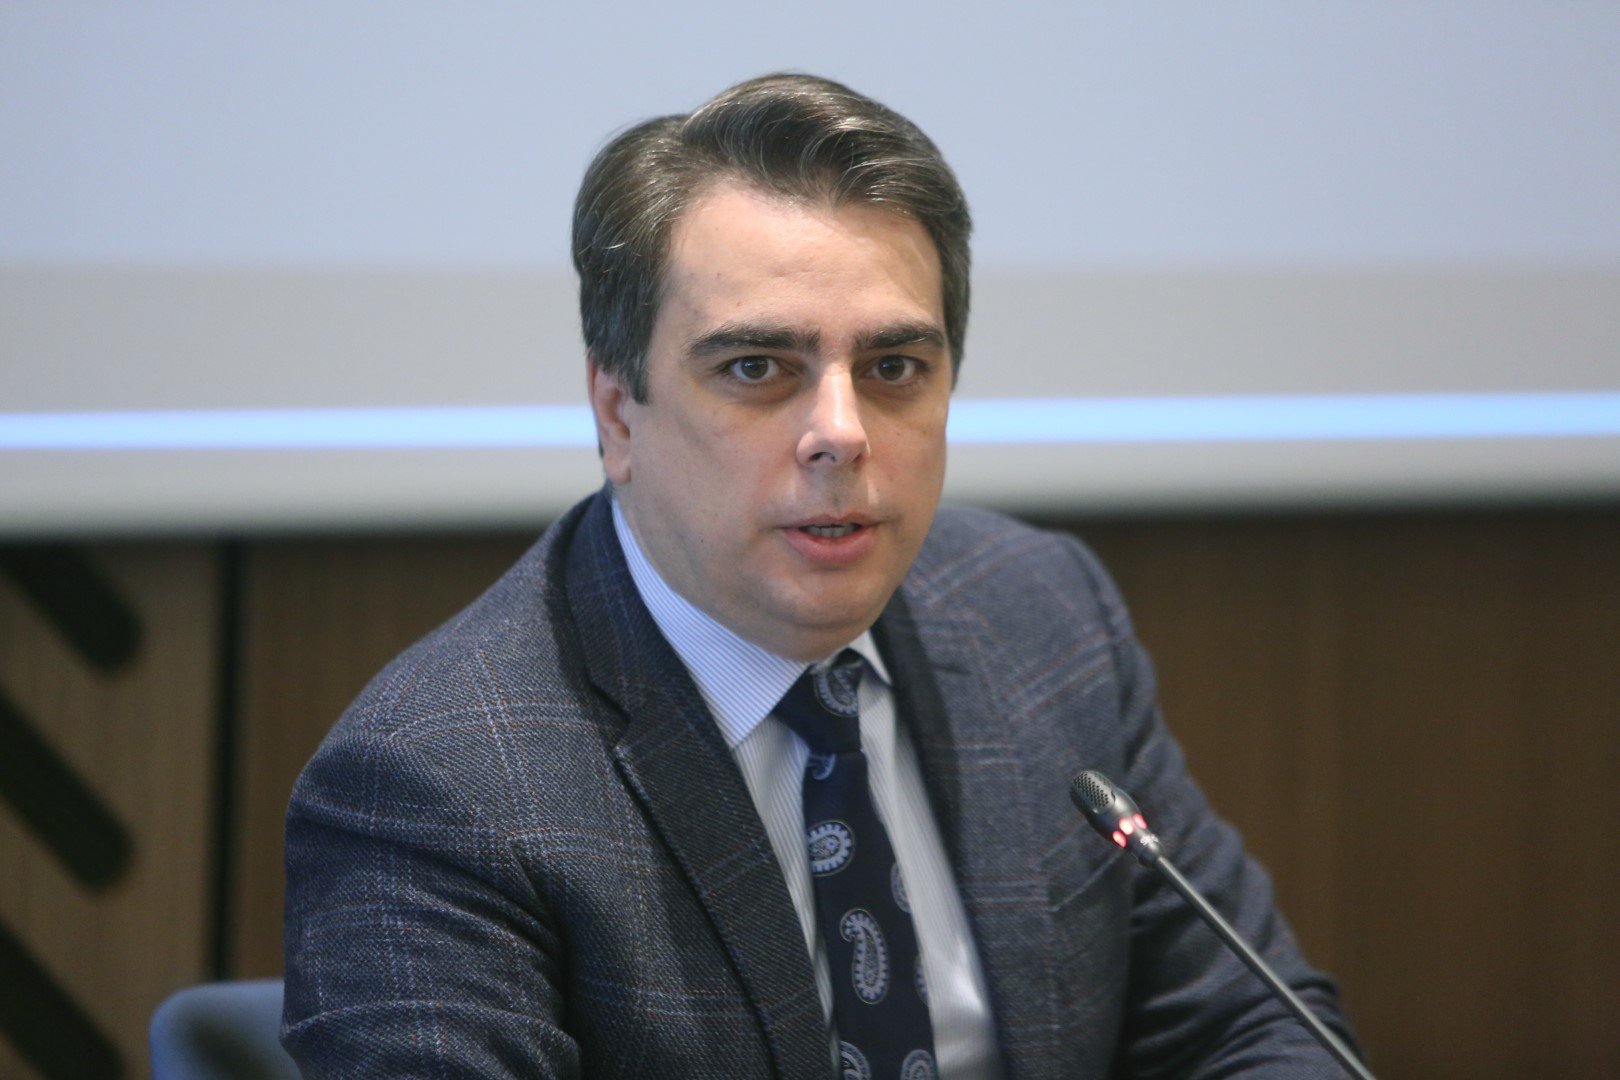 Асен Василев: Като финансов министър ролята ми е да гледам трезво на нещата